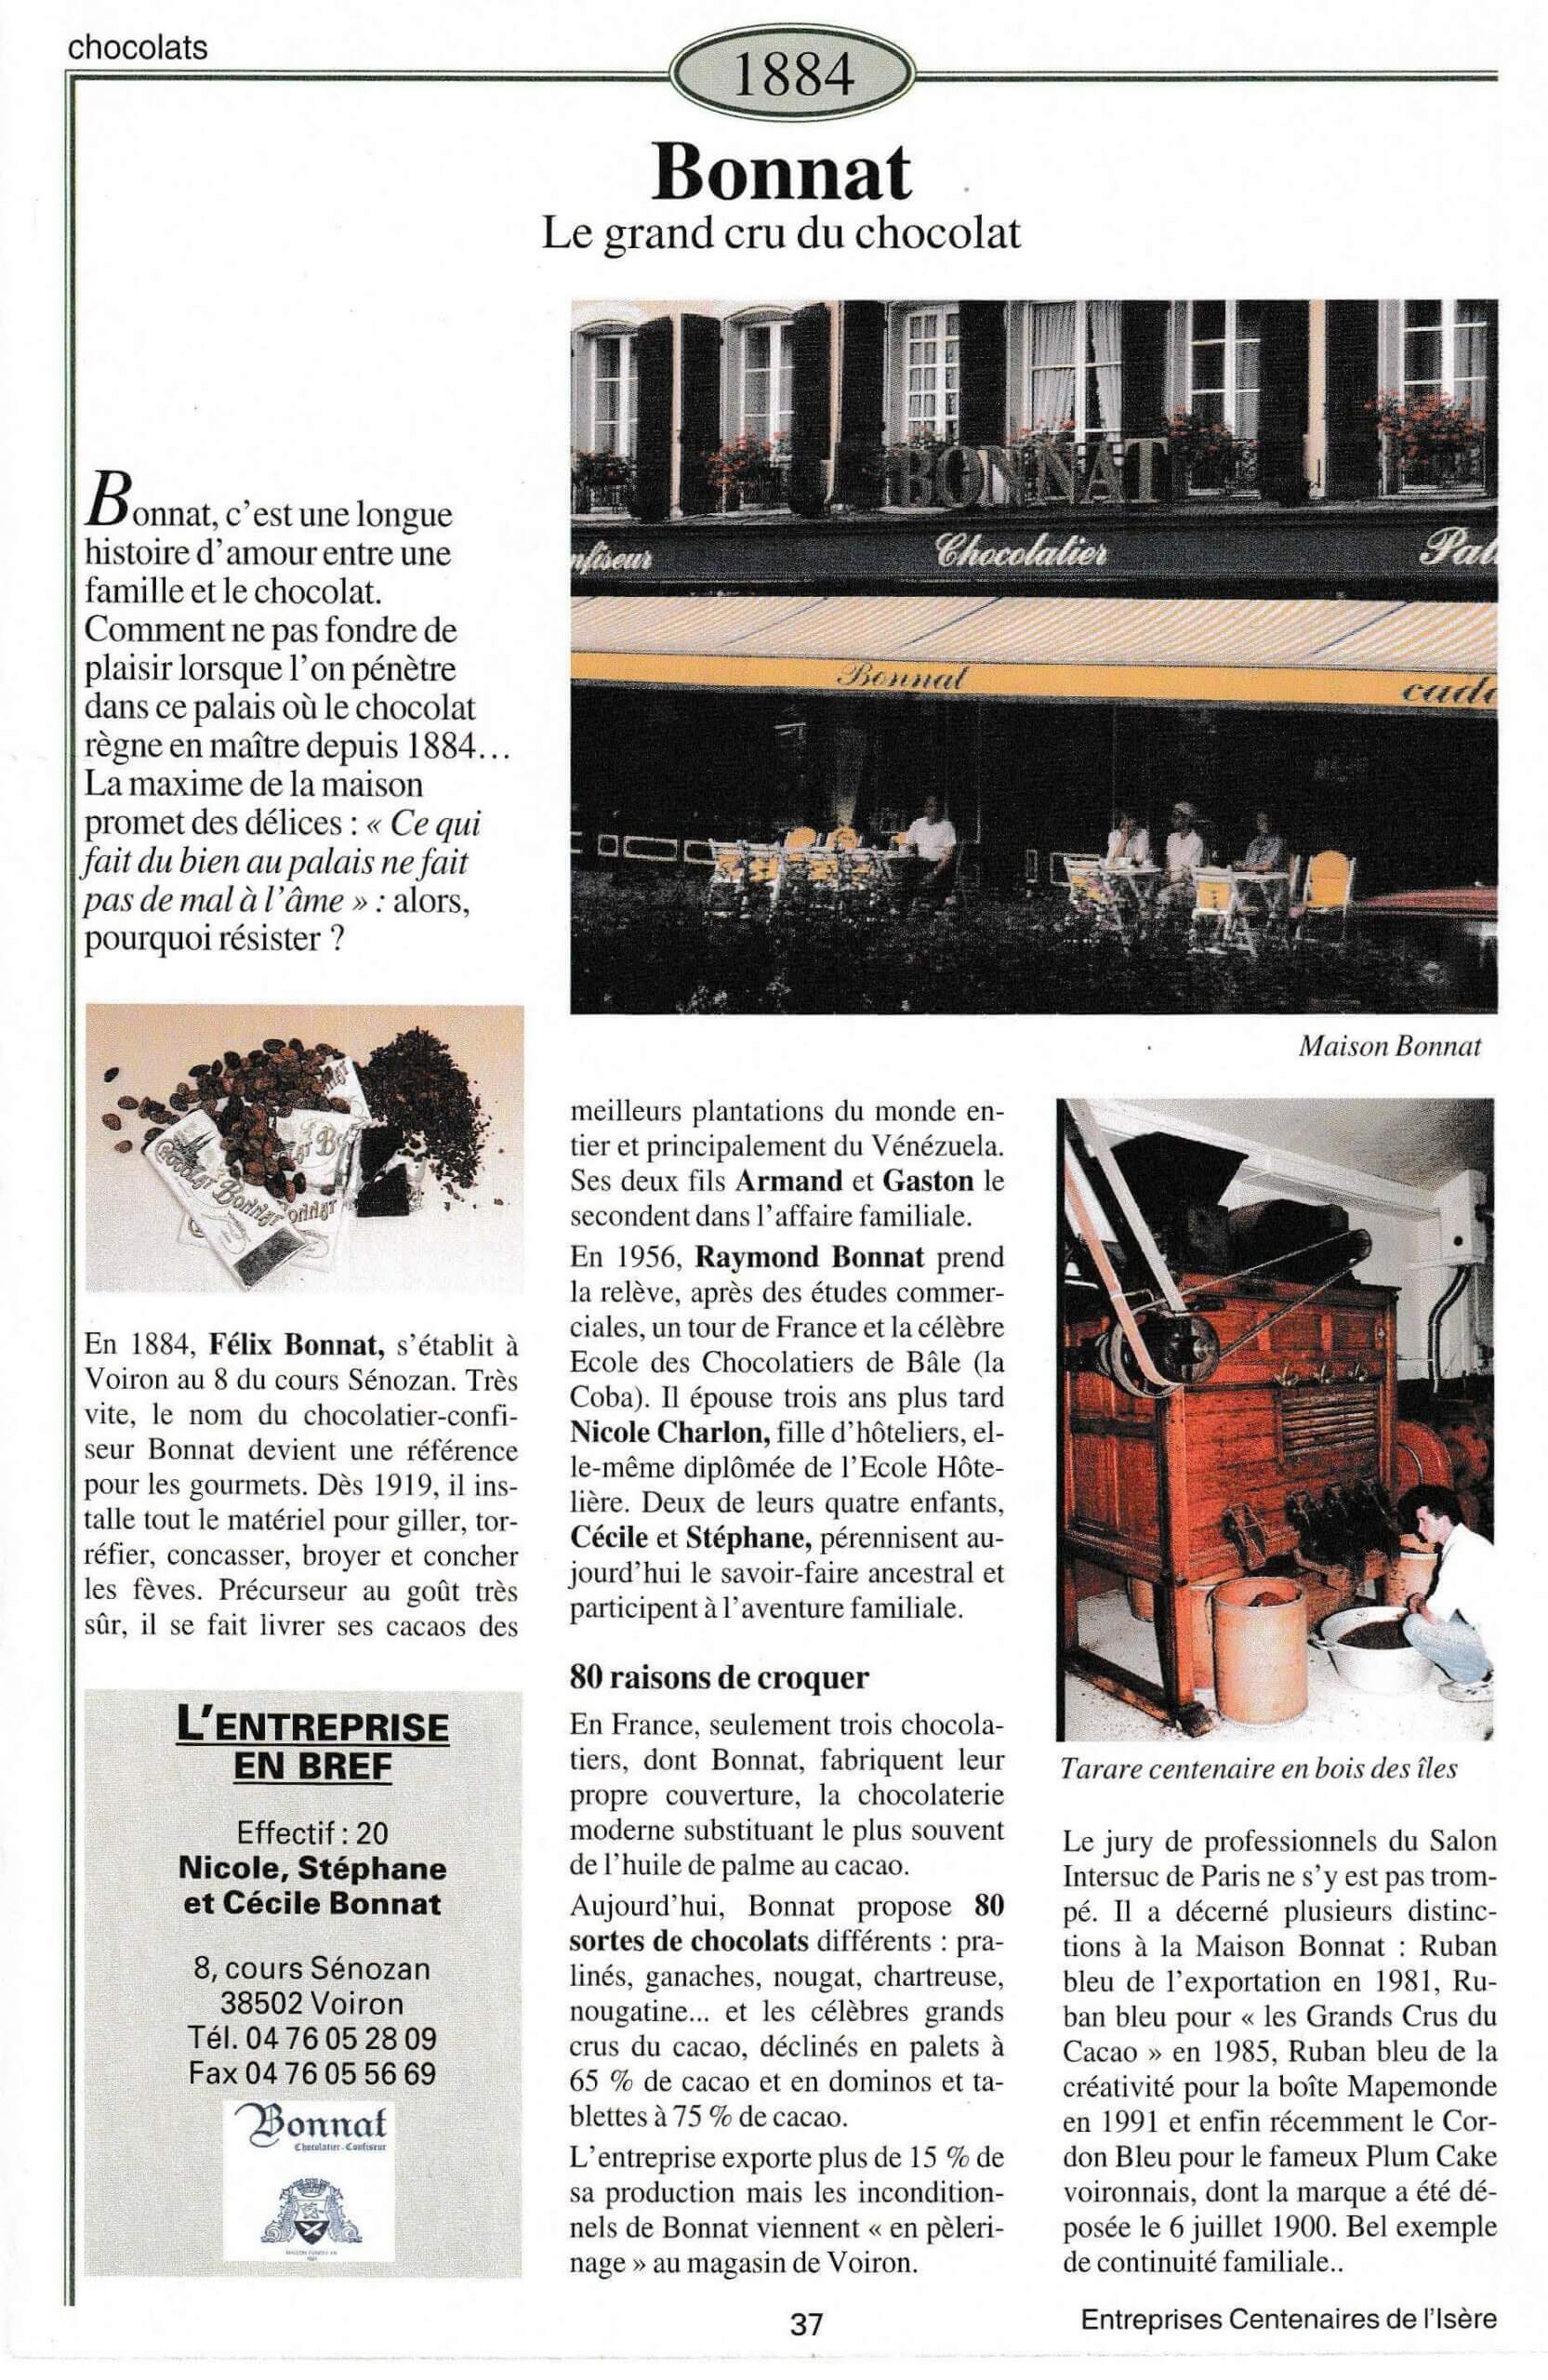 Bonnat - fiche du supplément "Entreprises centenaires en Isère", publié par Les affiches de Grenoble et du Dauphiné, juin 1998.